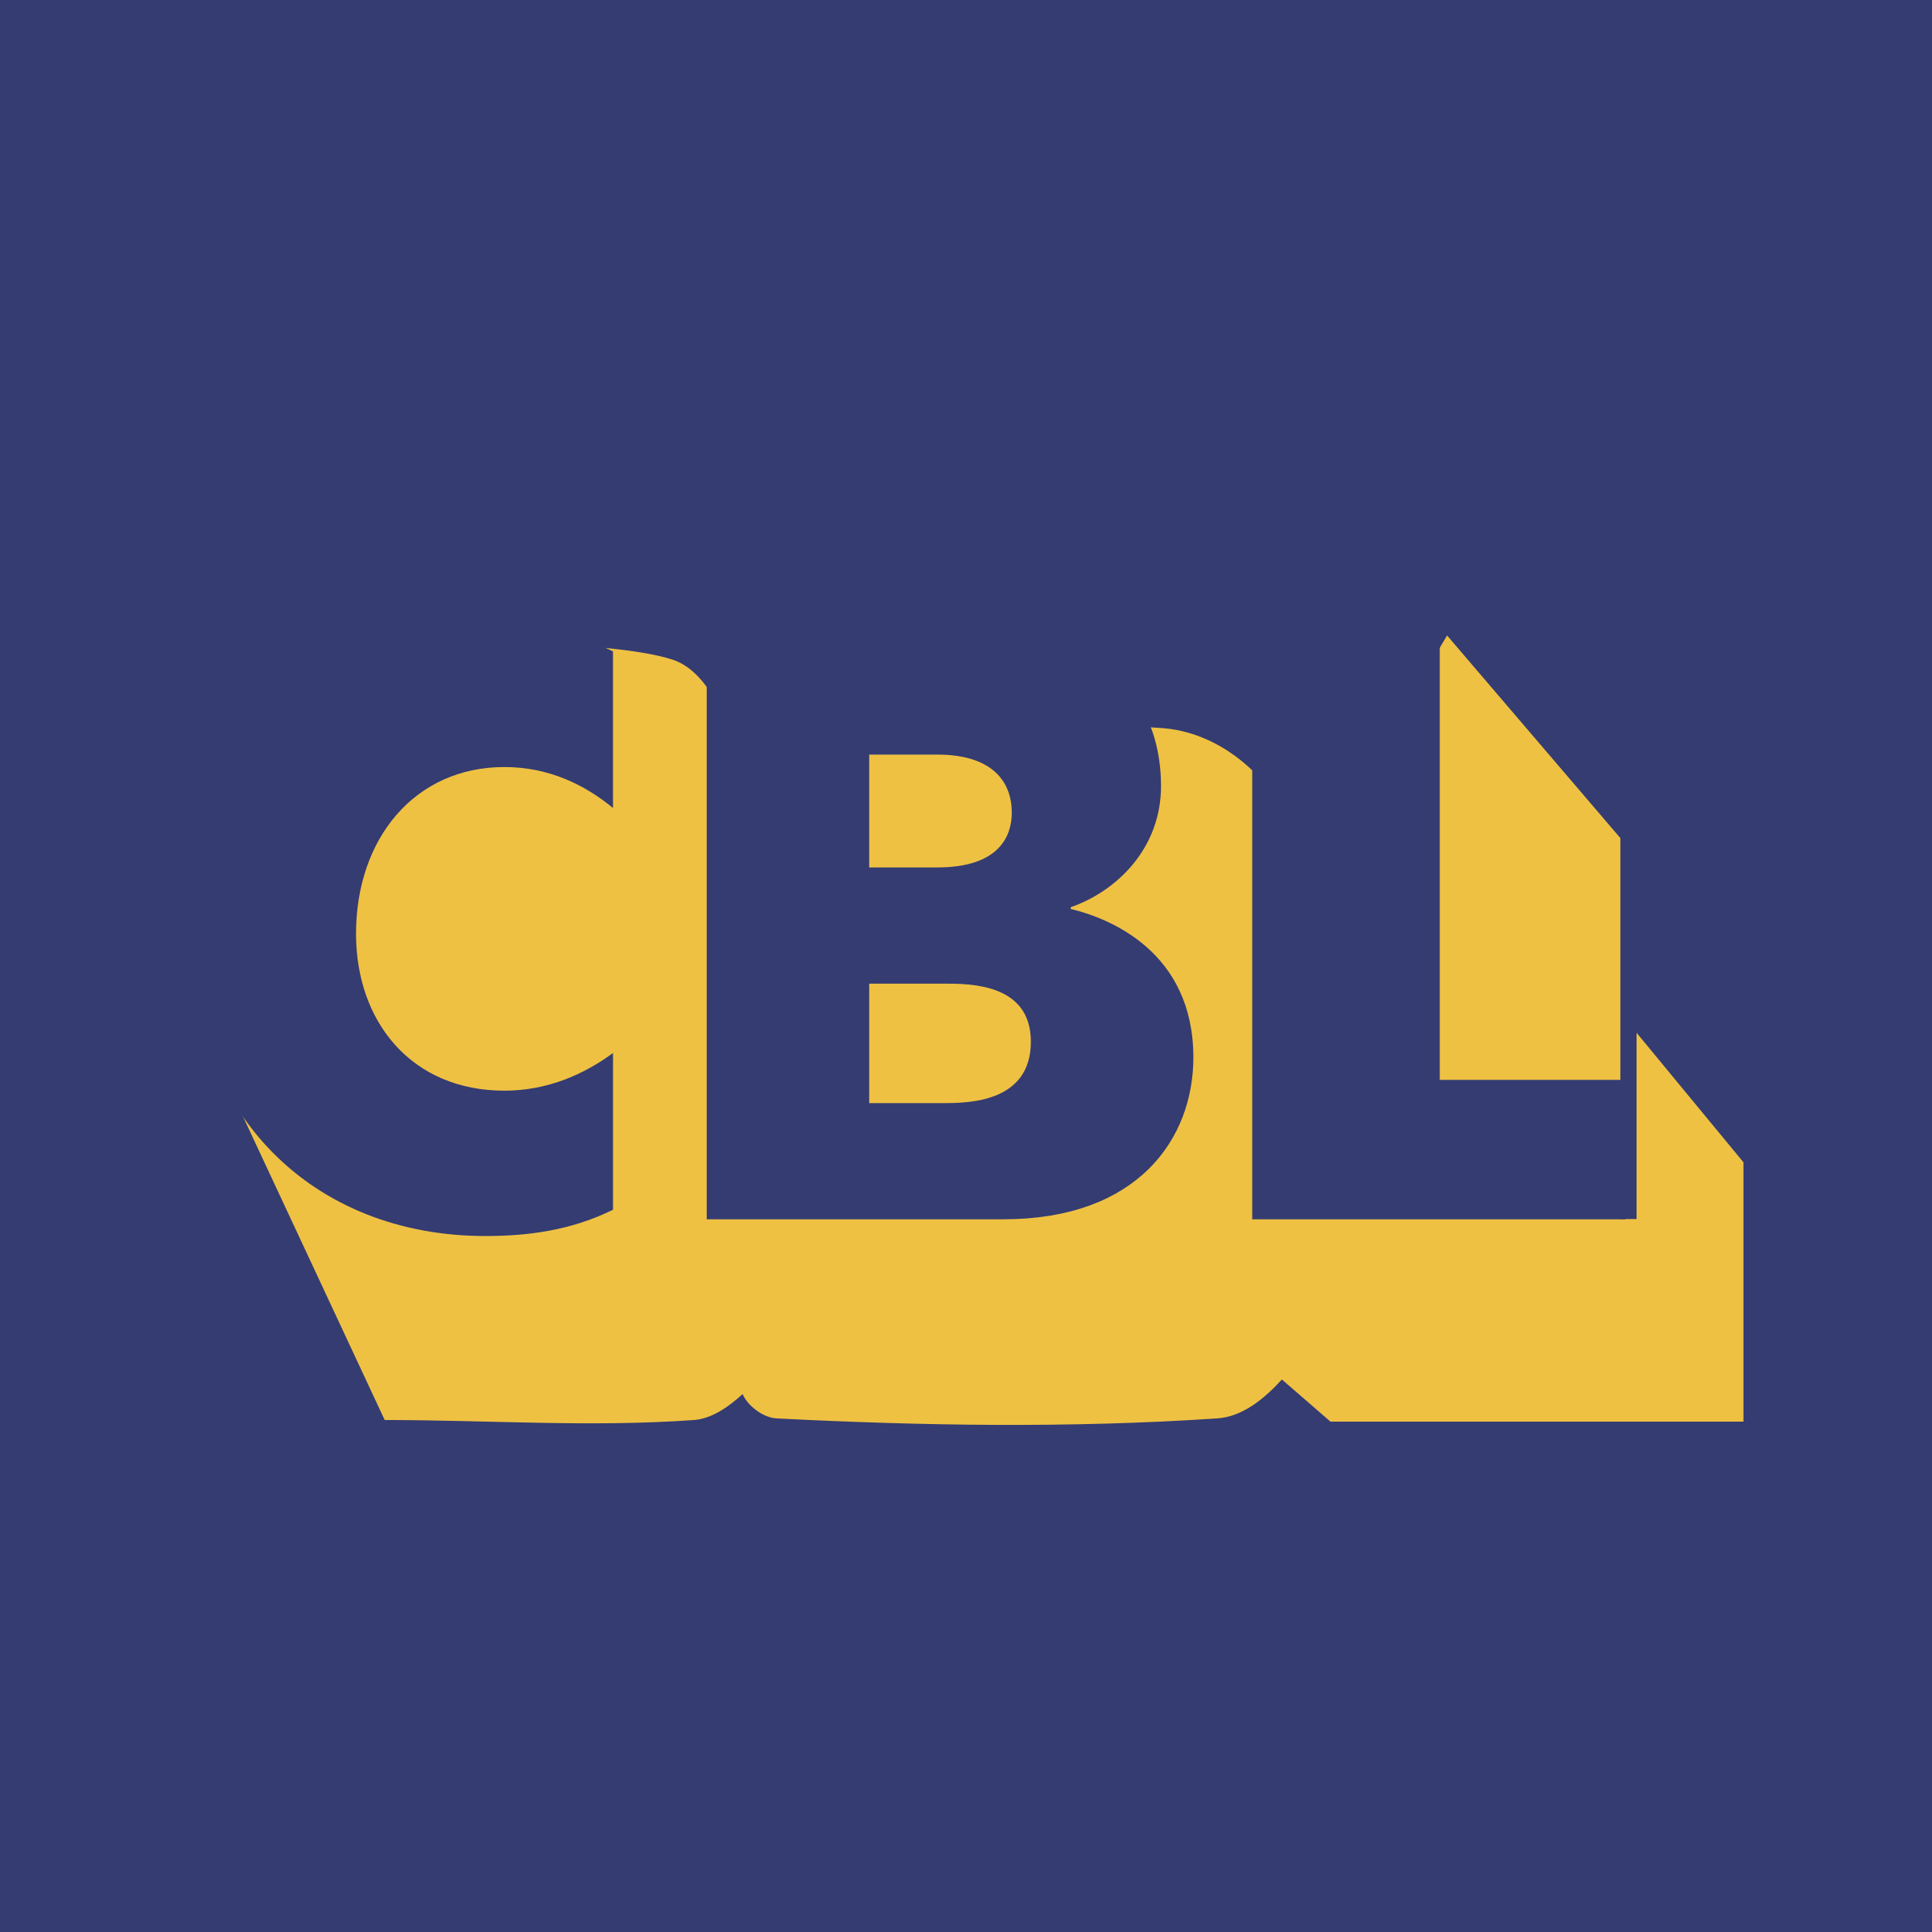 CBL Logo - CBL Logo PNG Transparent & SVG Vector - Freebie Supply